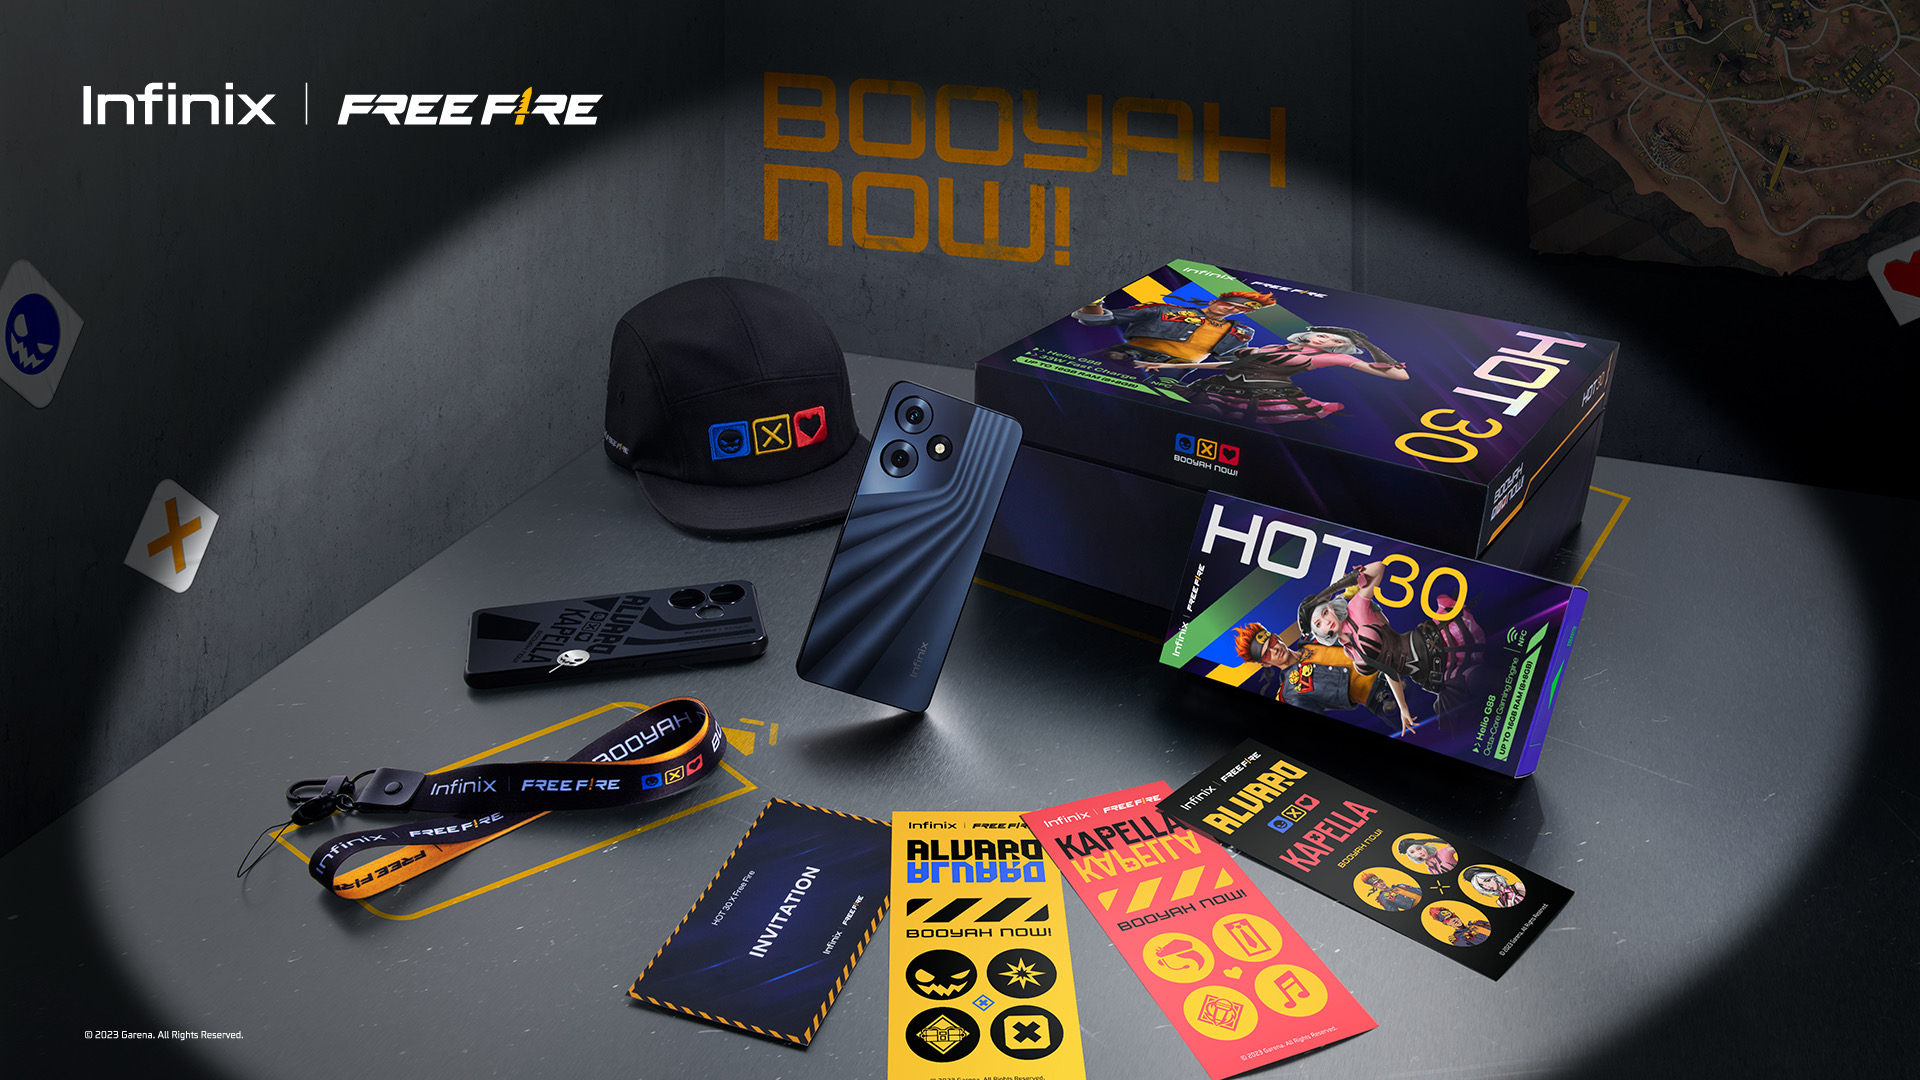 Infinix HOT 30 Series kini rasmi dengan spesifikasi lebih baik - Free Fire Edition turut dilancarkan 2